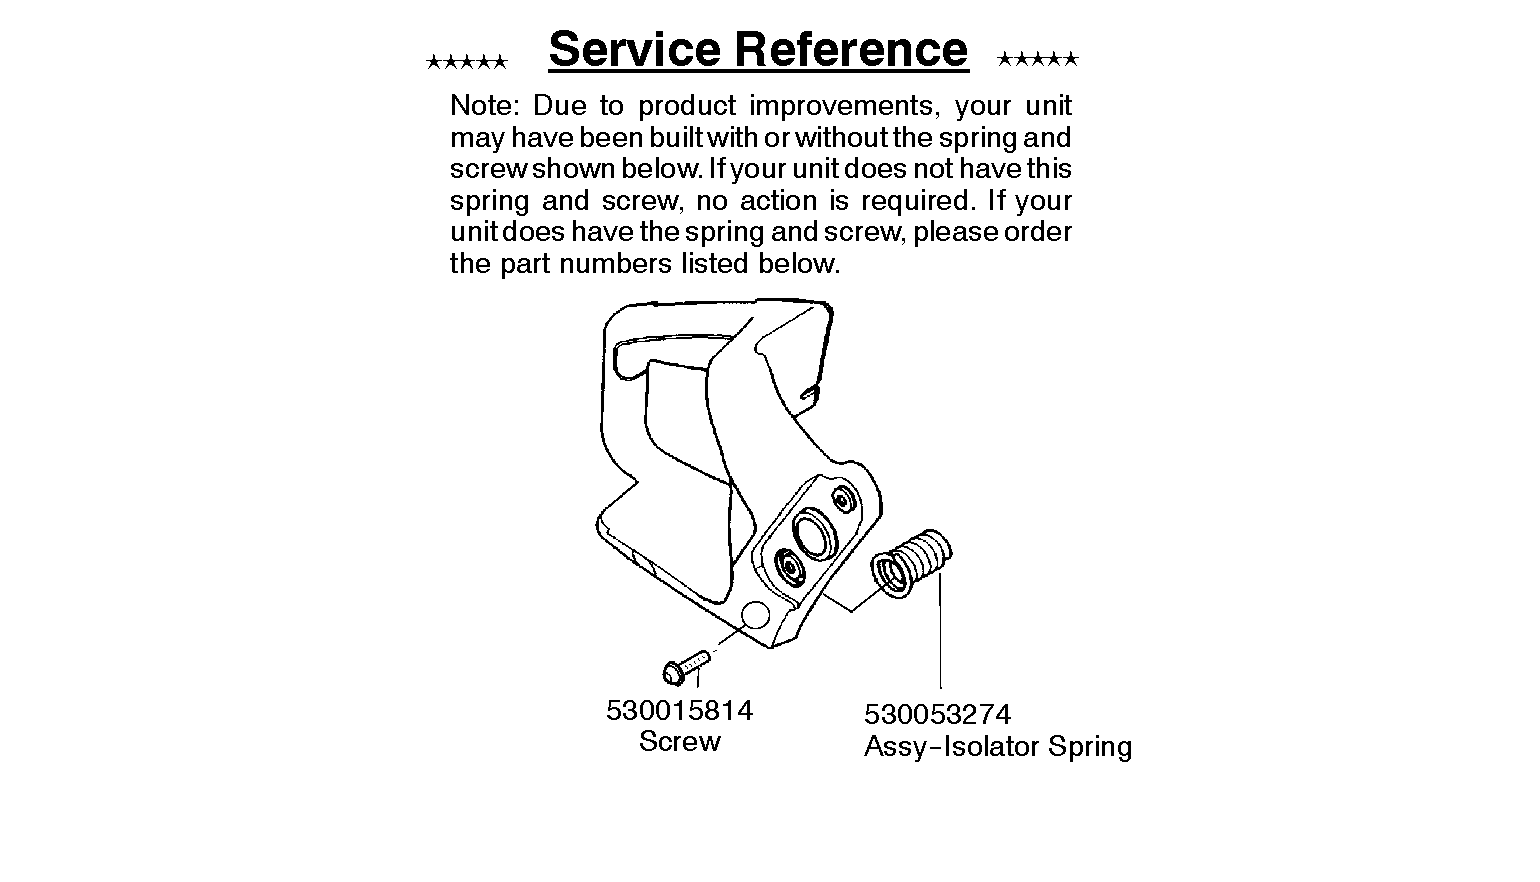 Service updates 530015814, 545006036